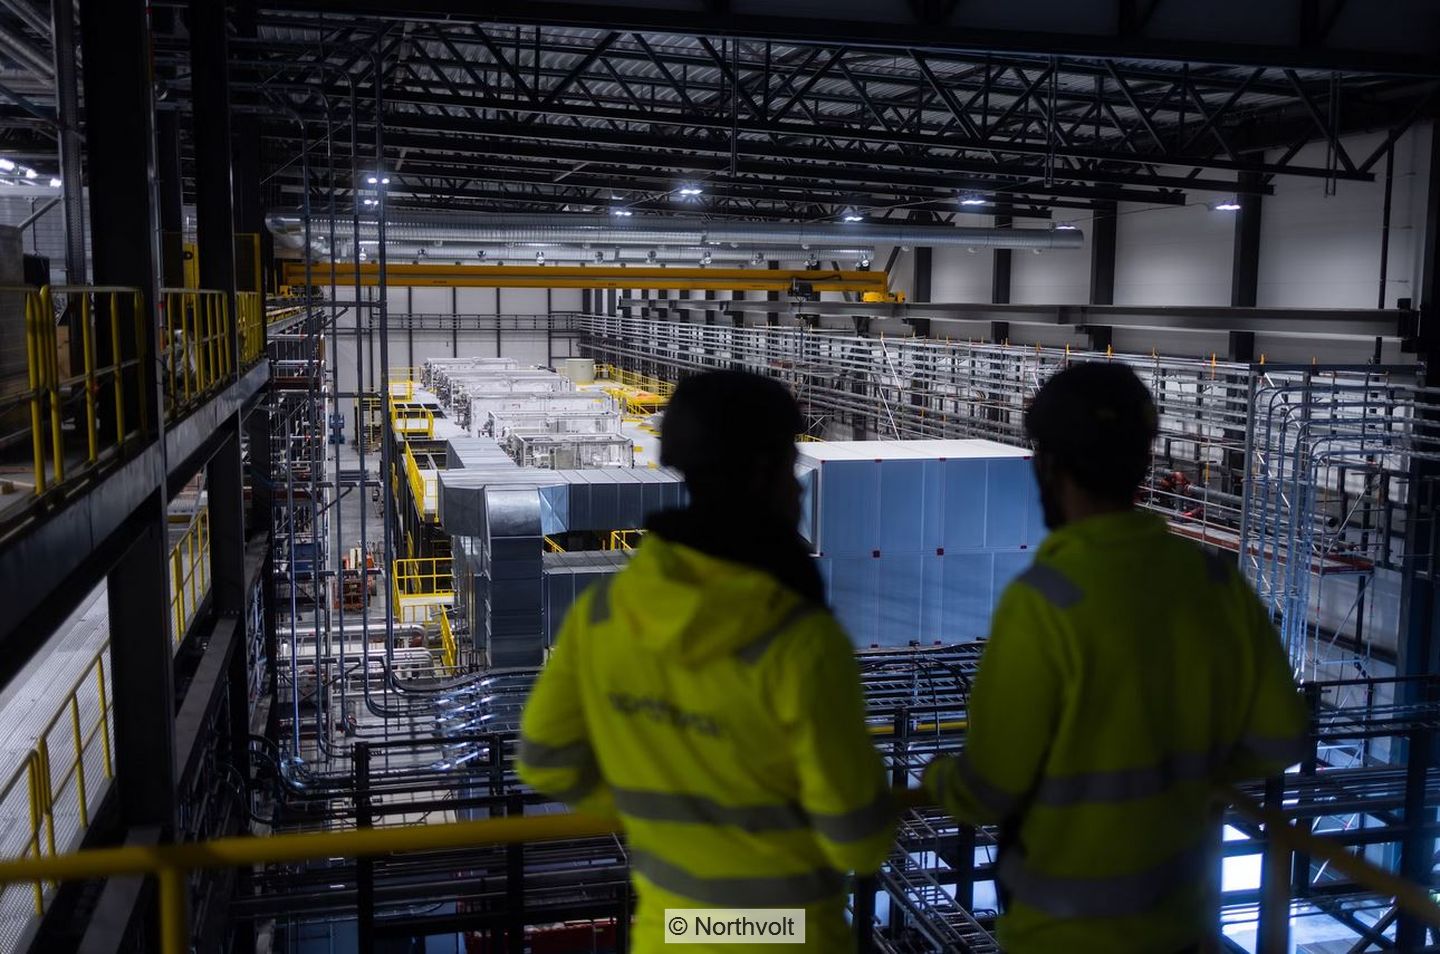 Blick in Produktionshalle, im Vordergrund zwei Personen in gelben Jacken mit Aufschrift "Northvolt"